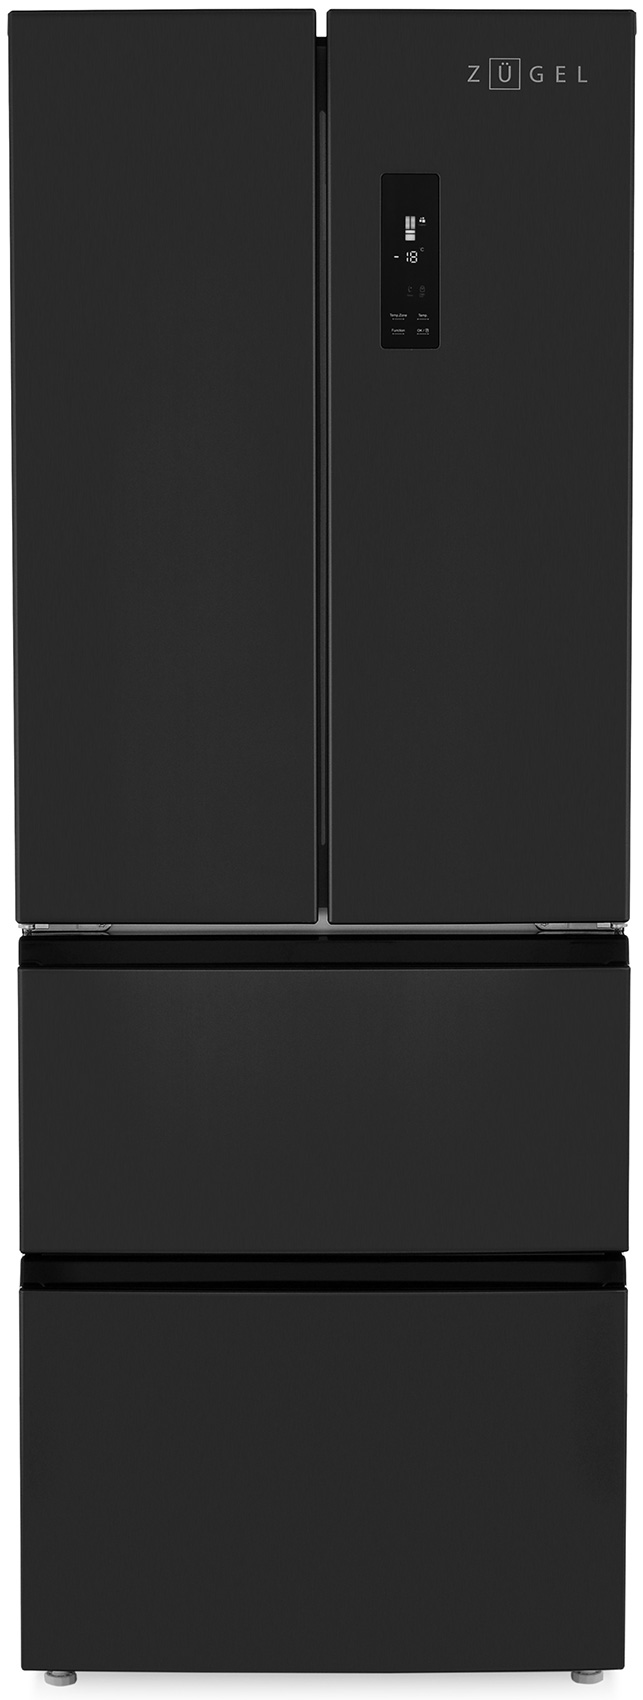 цена Многокамерный холодильник ZUGEL ZRFD361B, черный